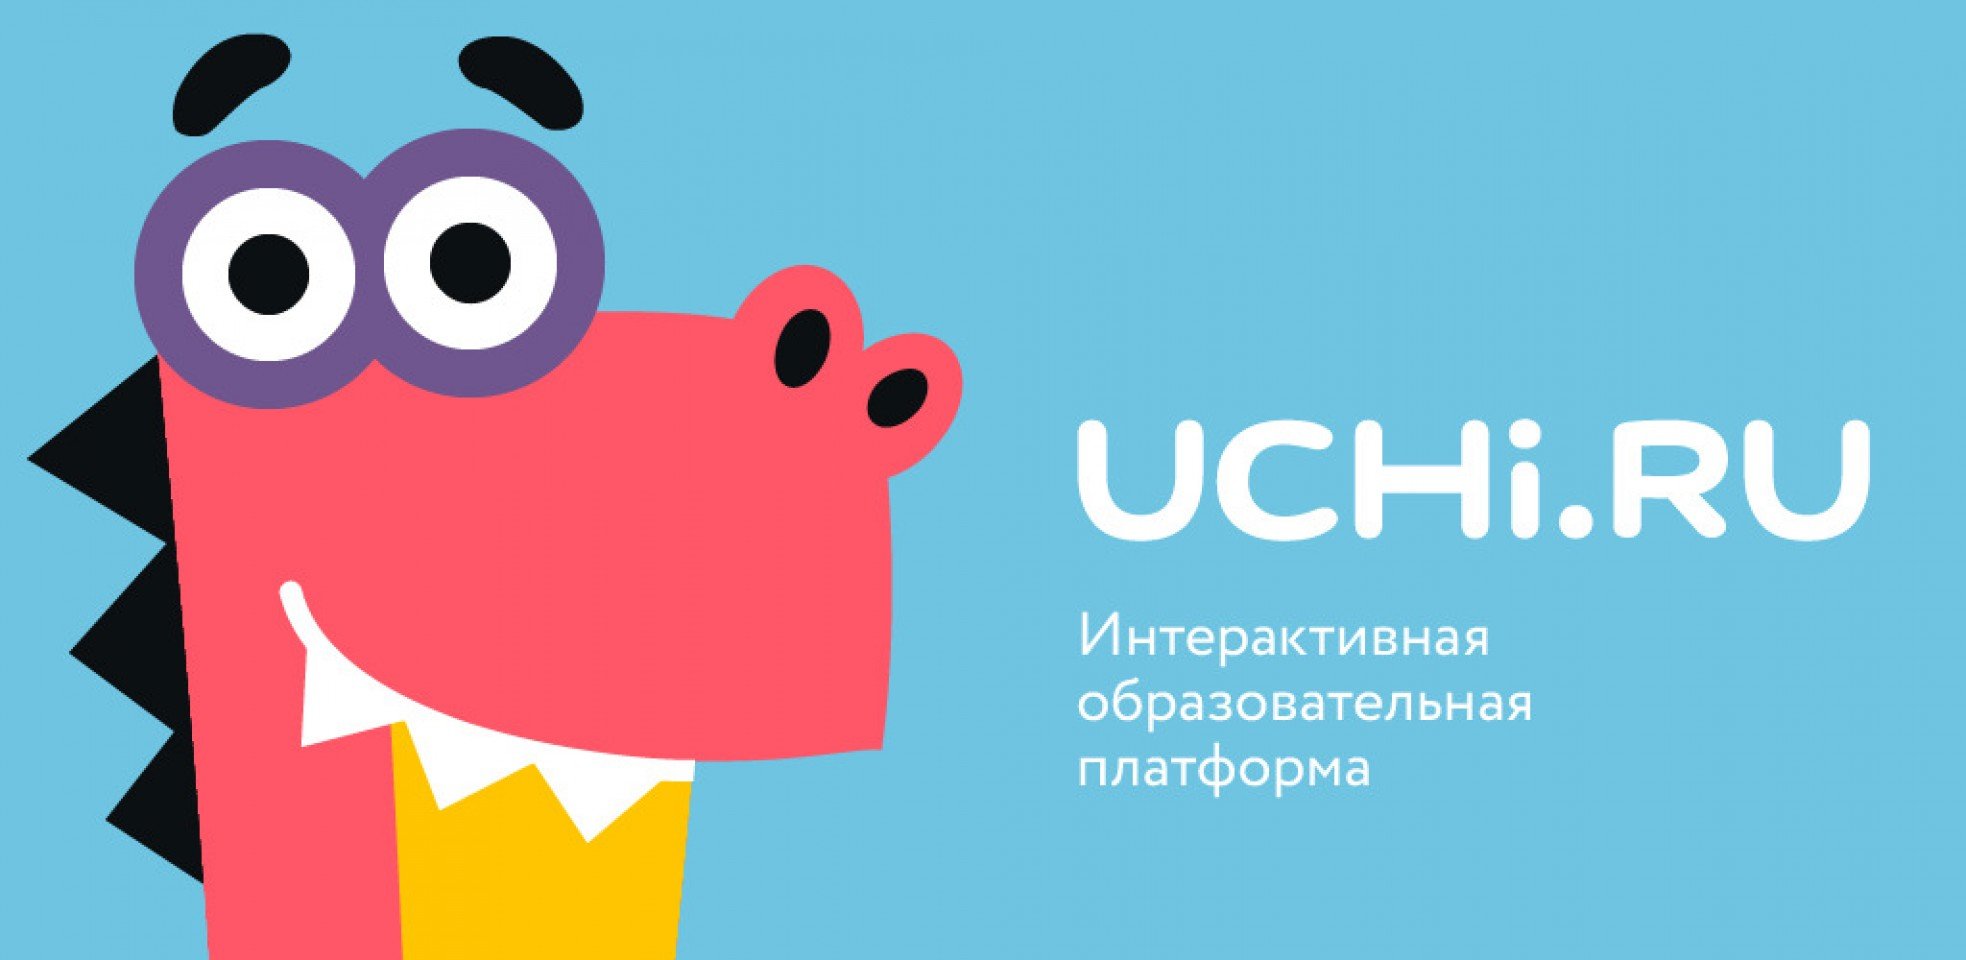 Образовательная платформа "Учи.ру"